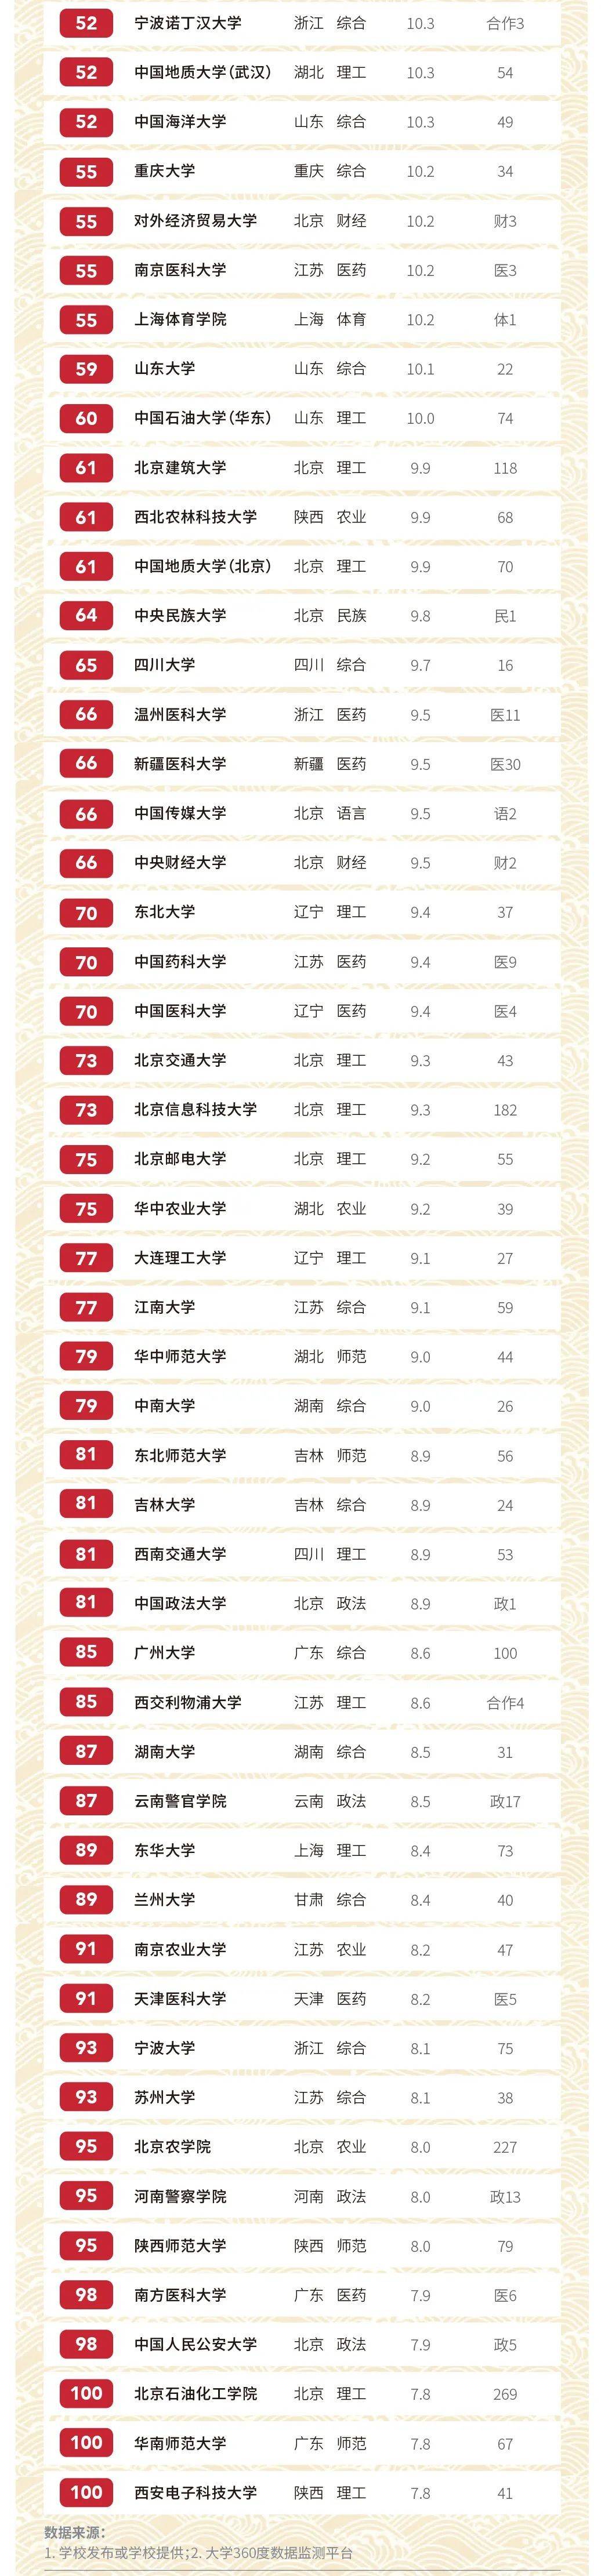 2020软科中国大学排名系列：生均学校收入排名 